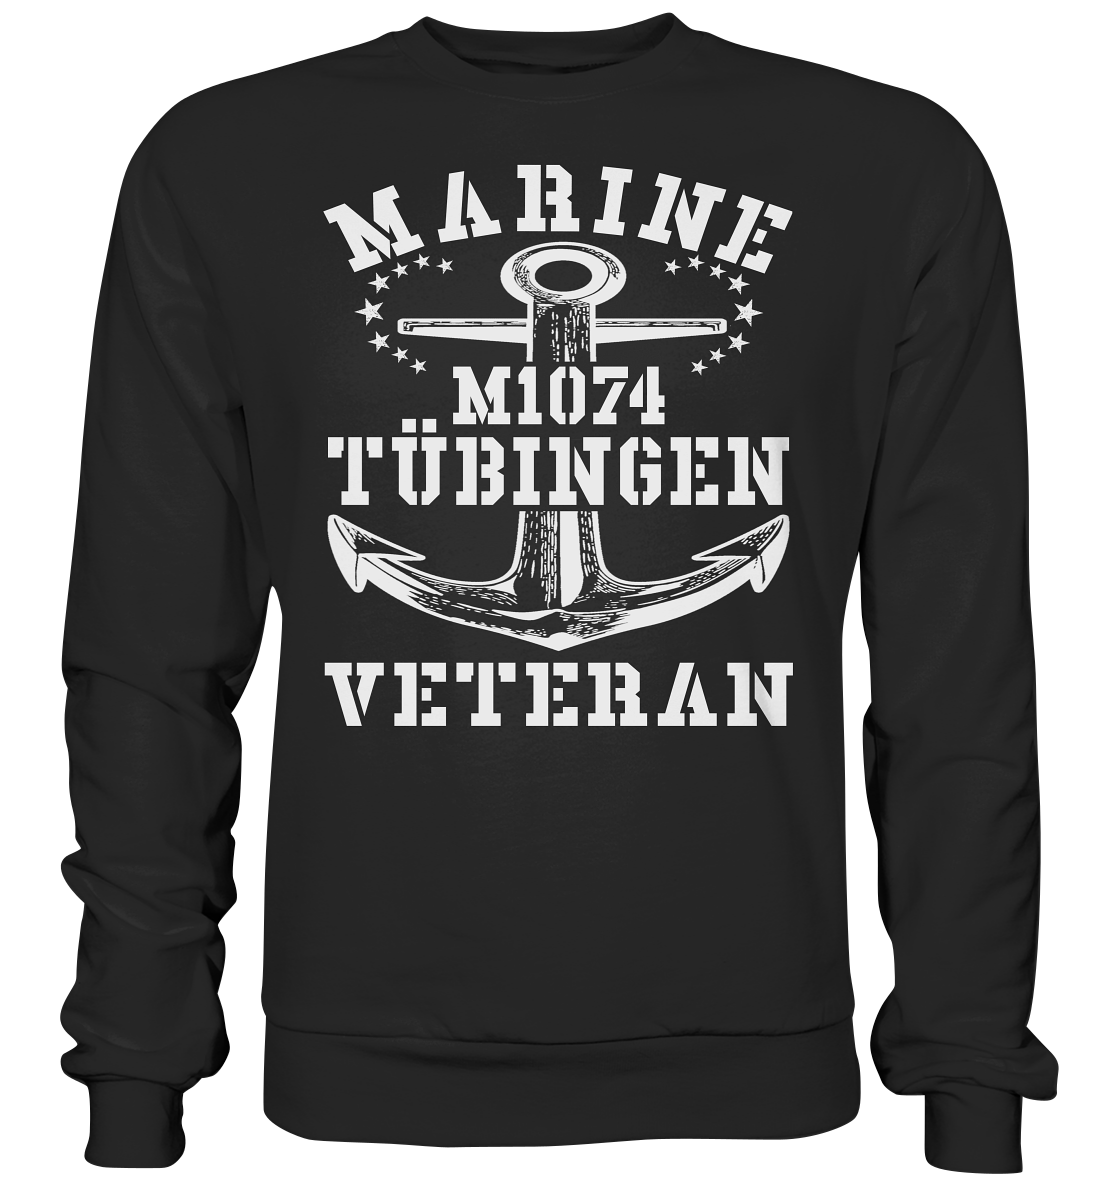 MARINE VETERAN M1074 TÜBINGEN - Premium Sweatshirt